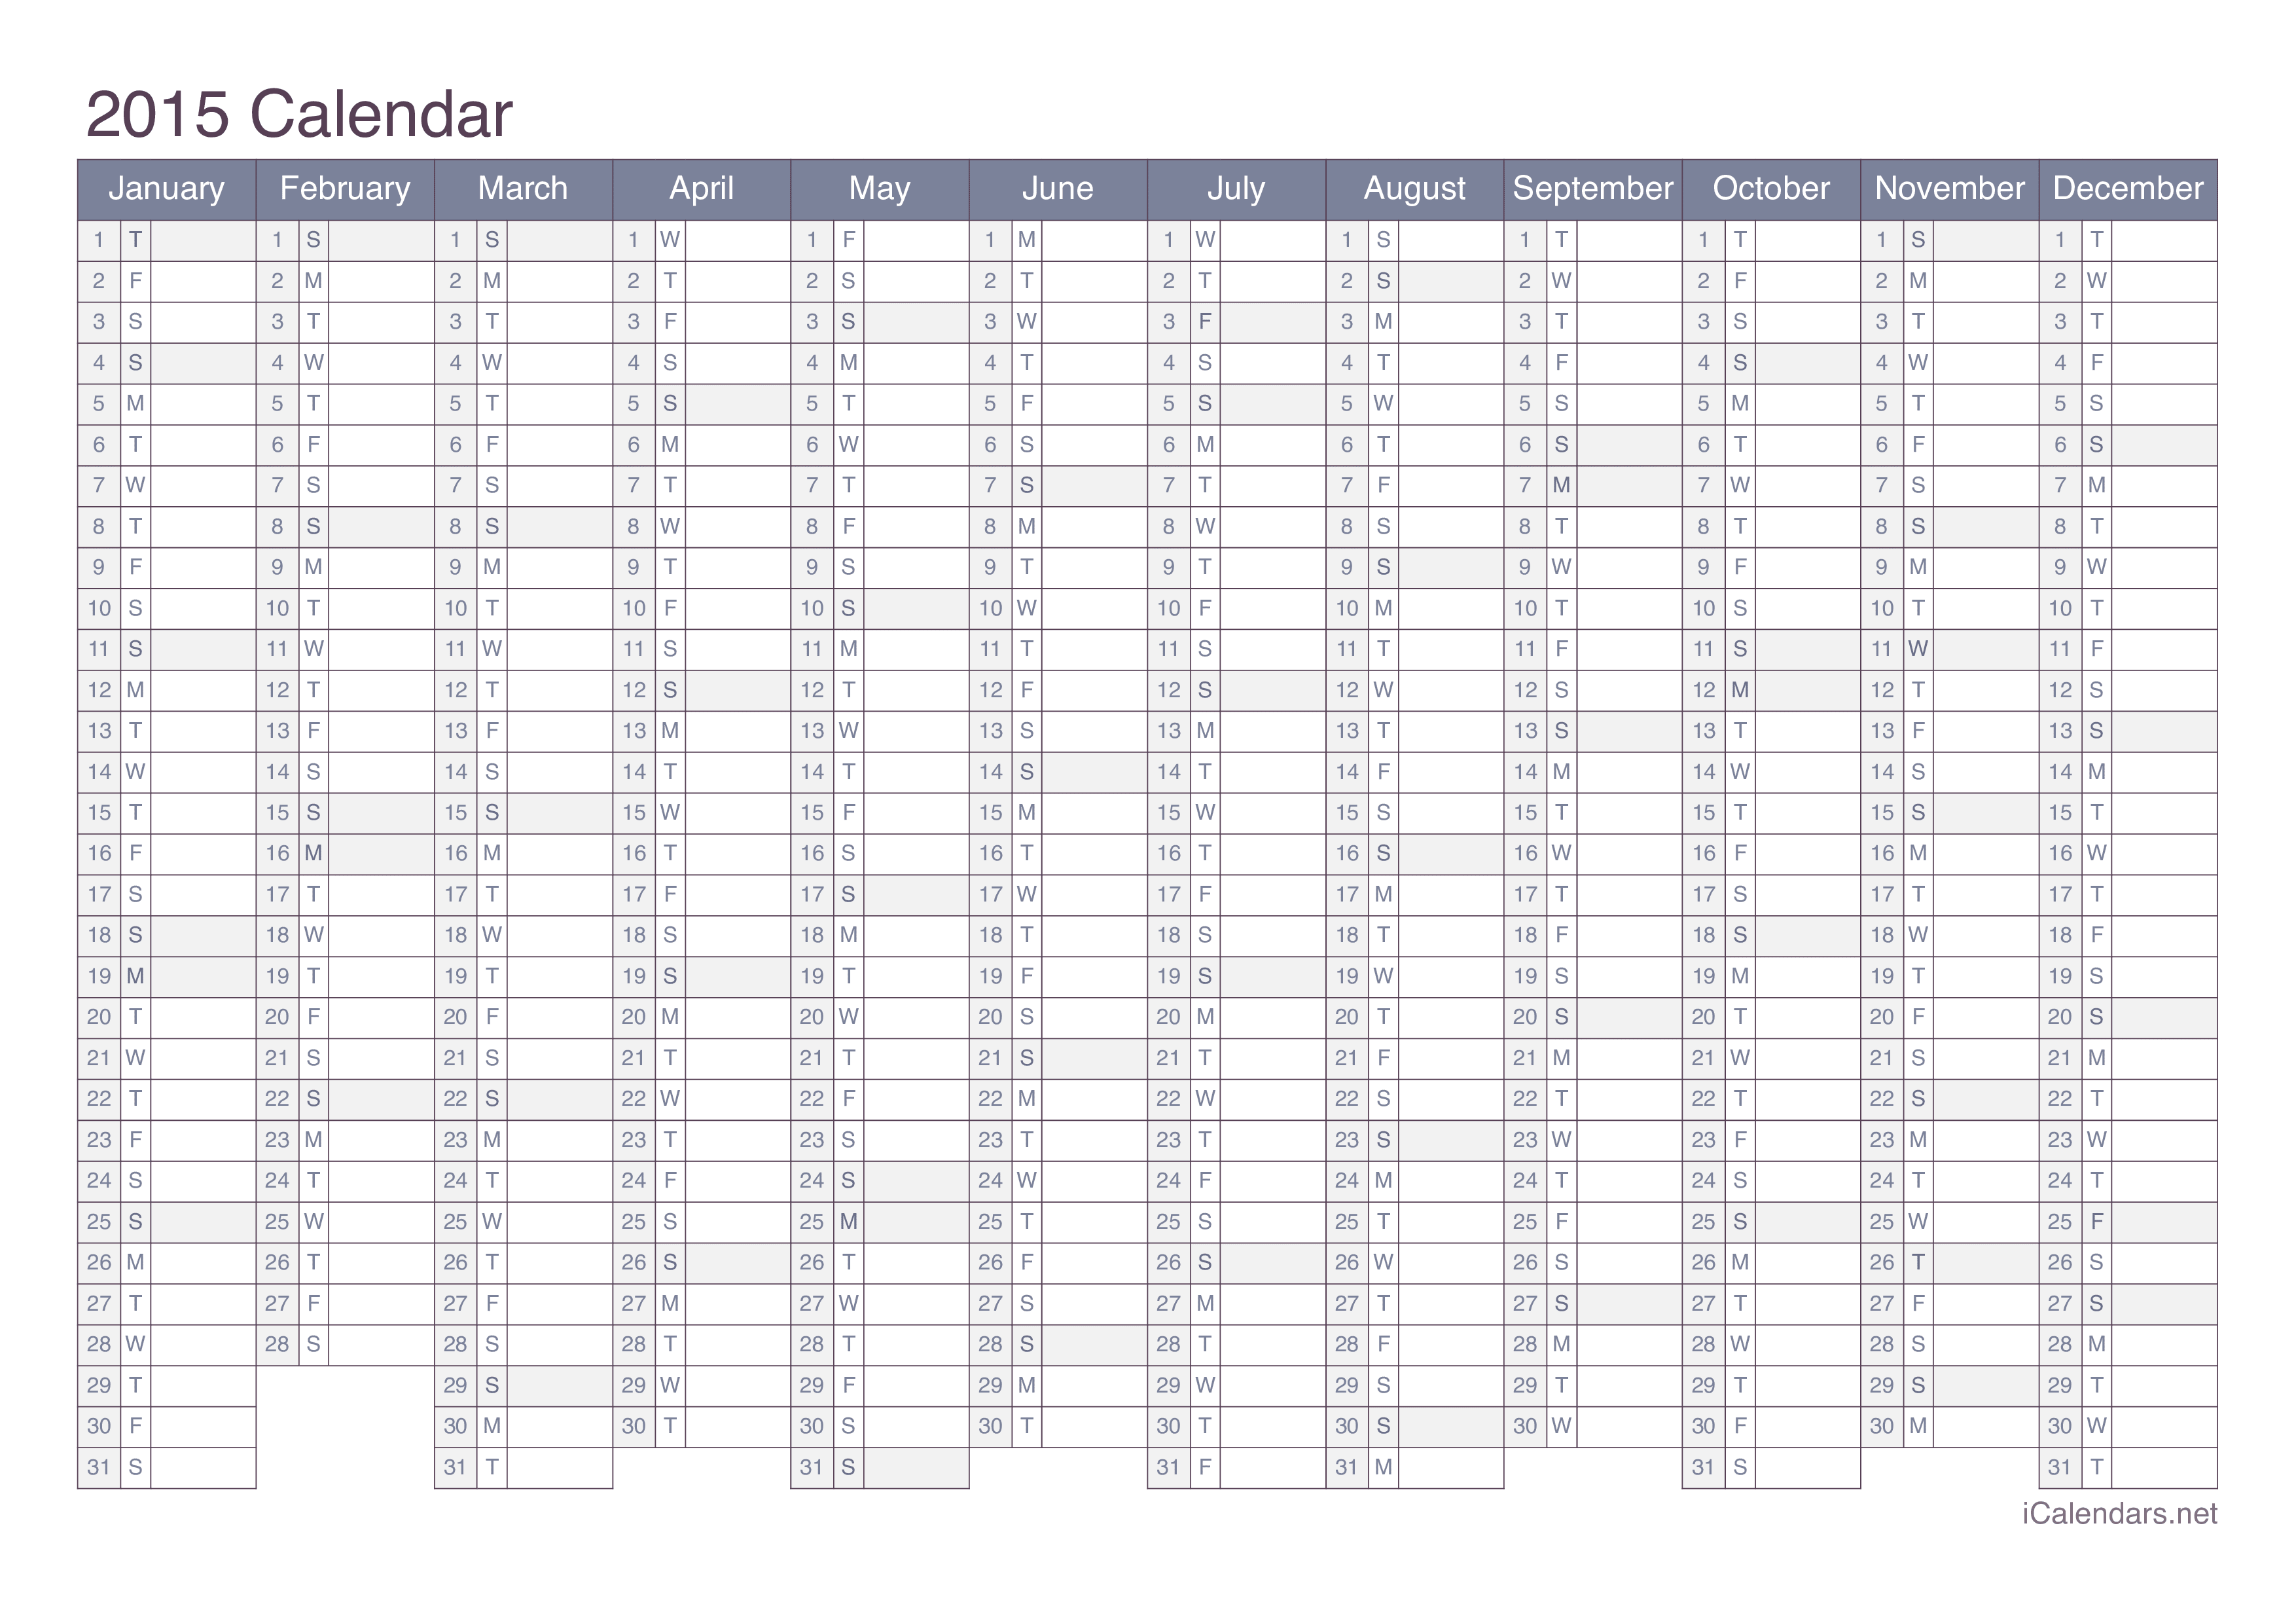 2015 Calendar - Office